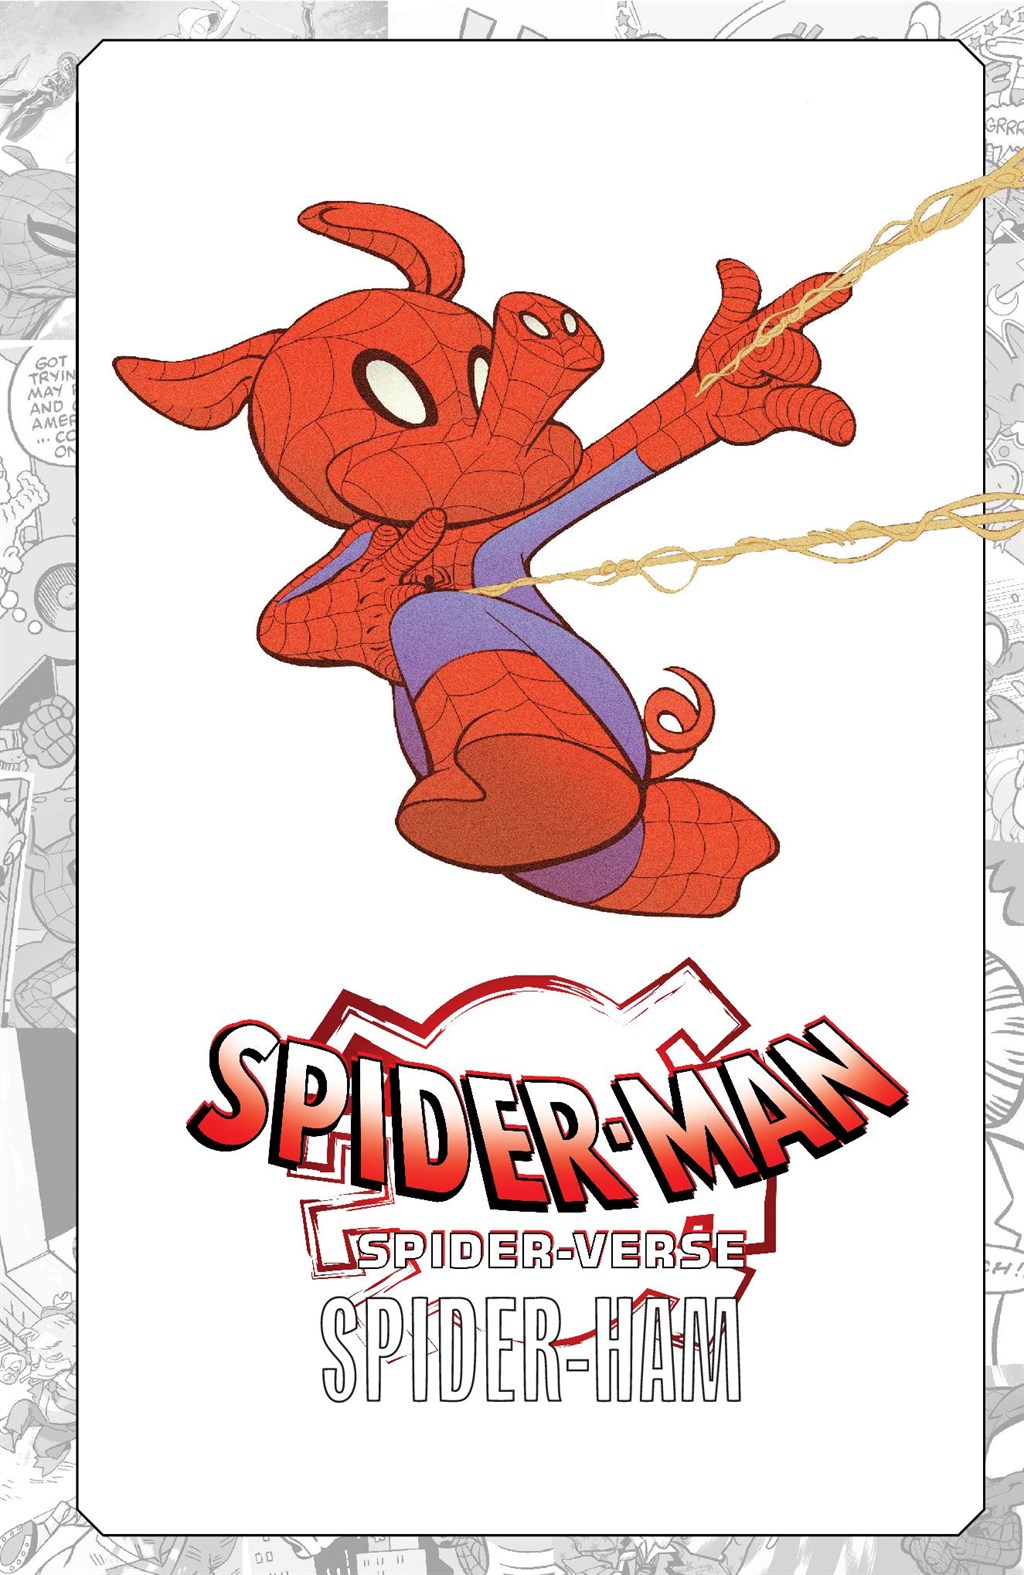 Read online Spider-Man: Spider-Verse comic -  Issue # Spider-Ham - 2